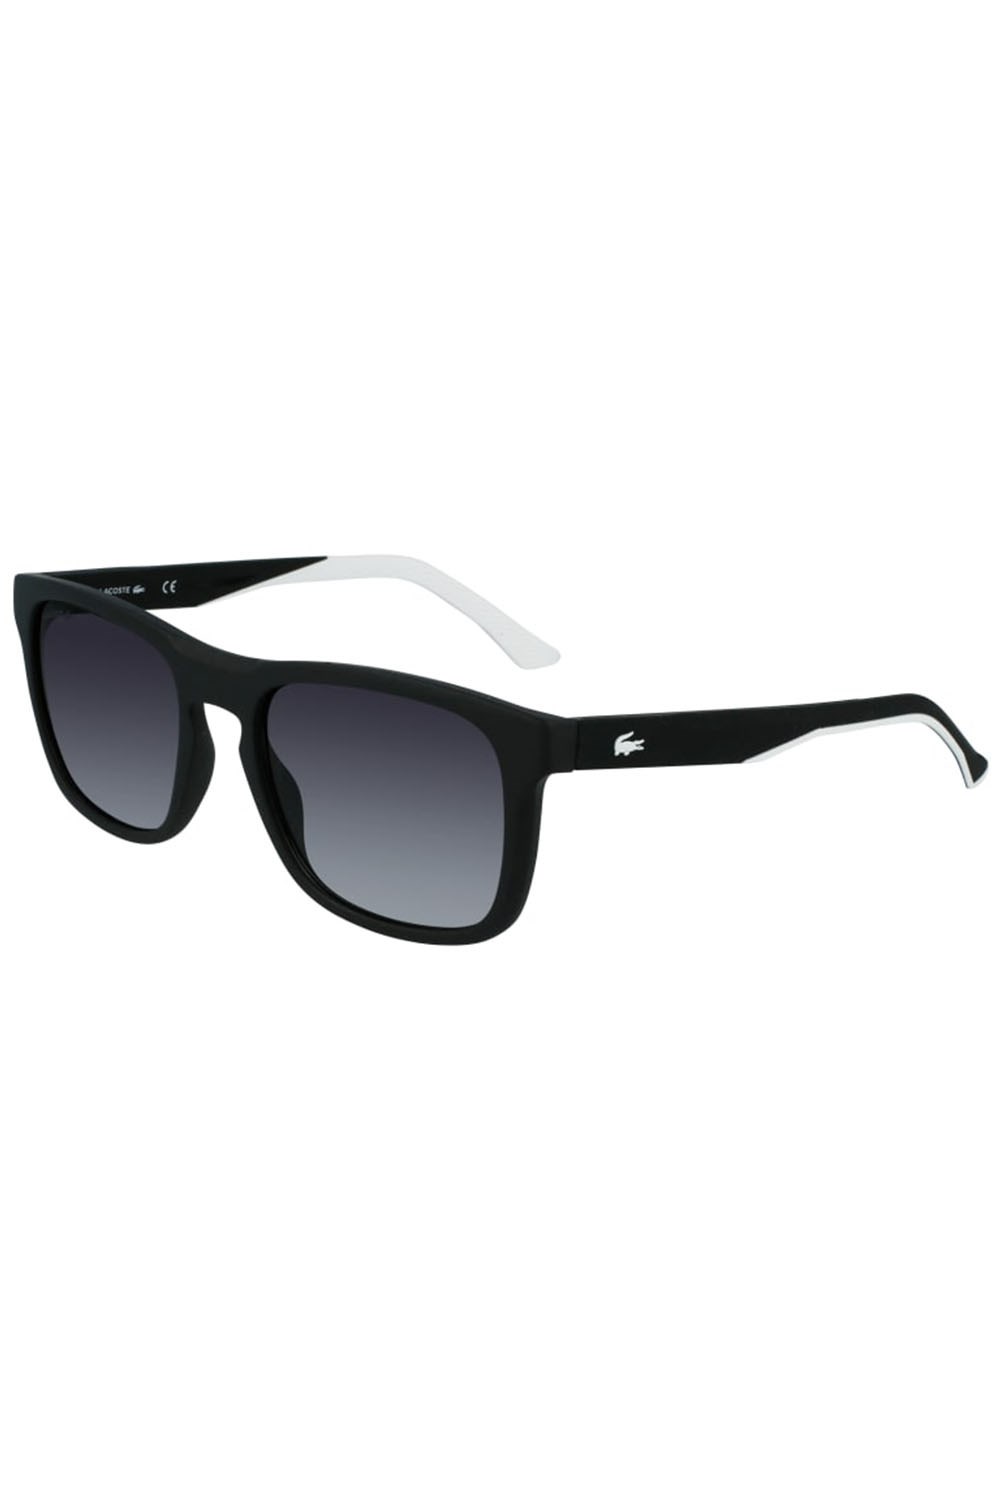 L956s Unisex Sunglasses -